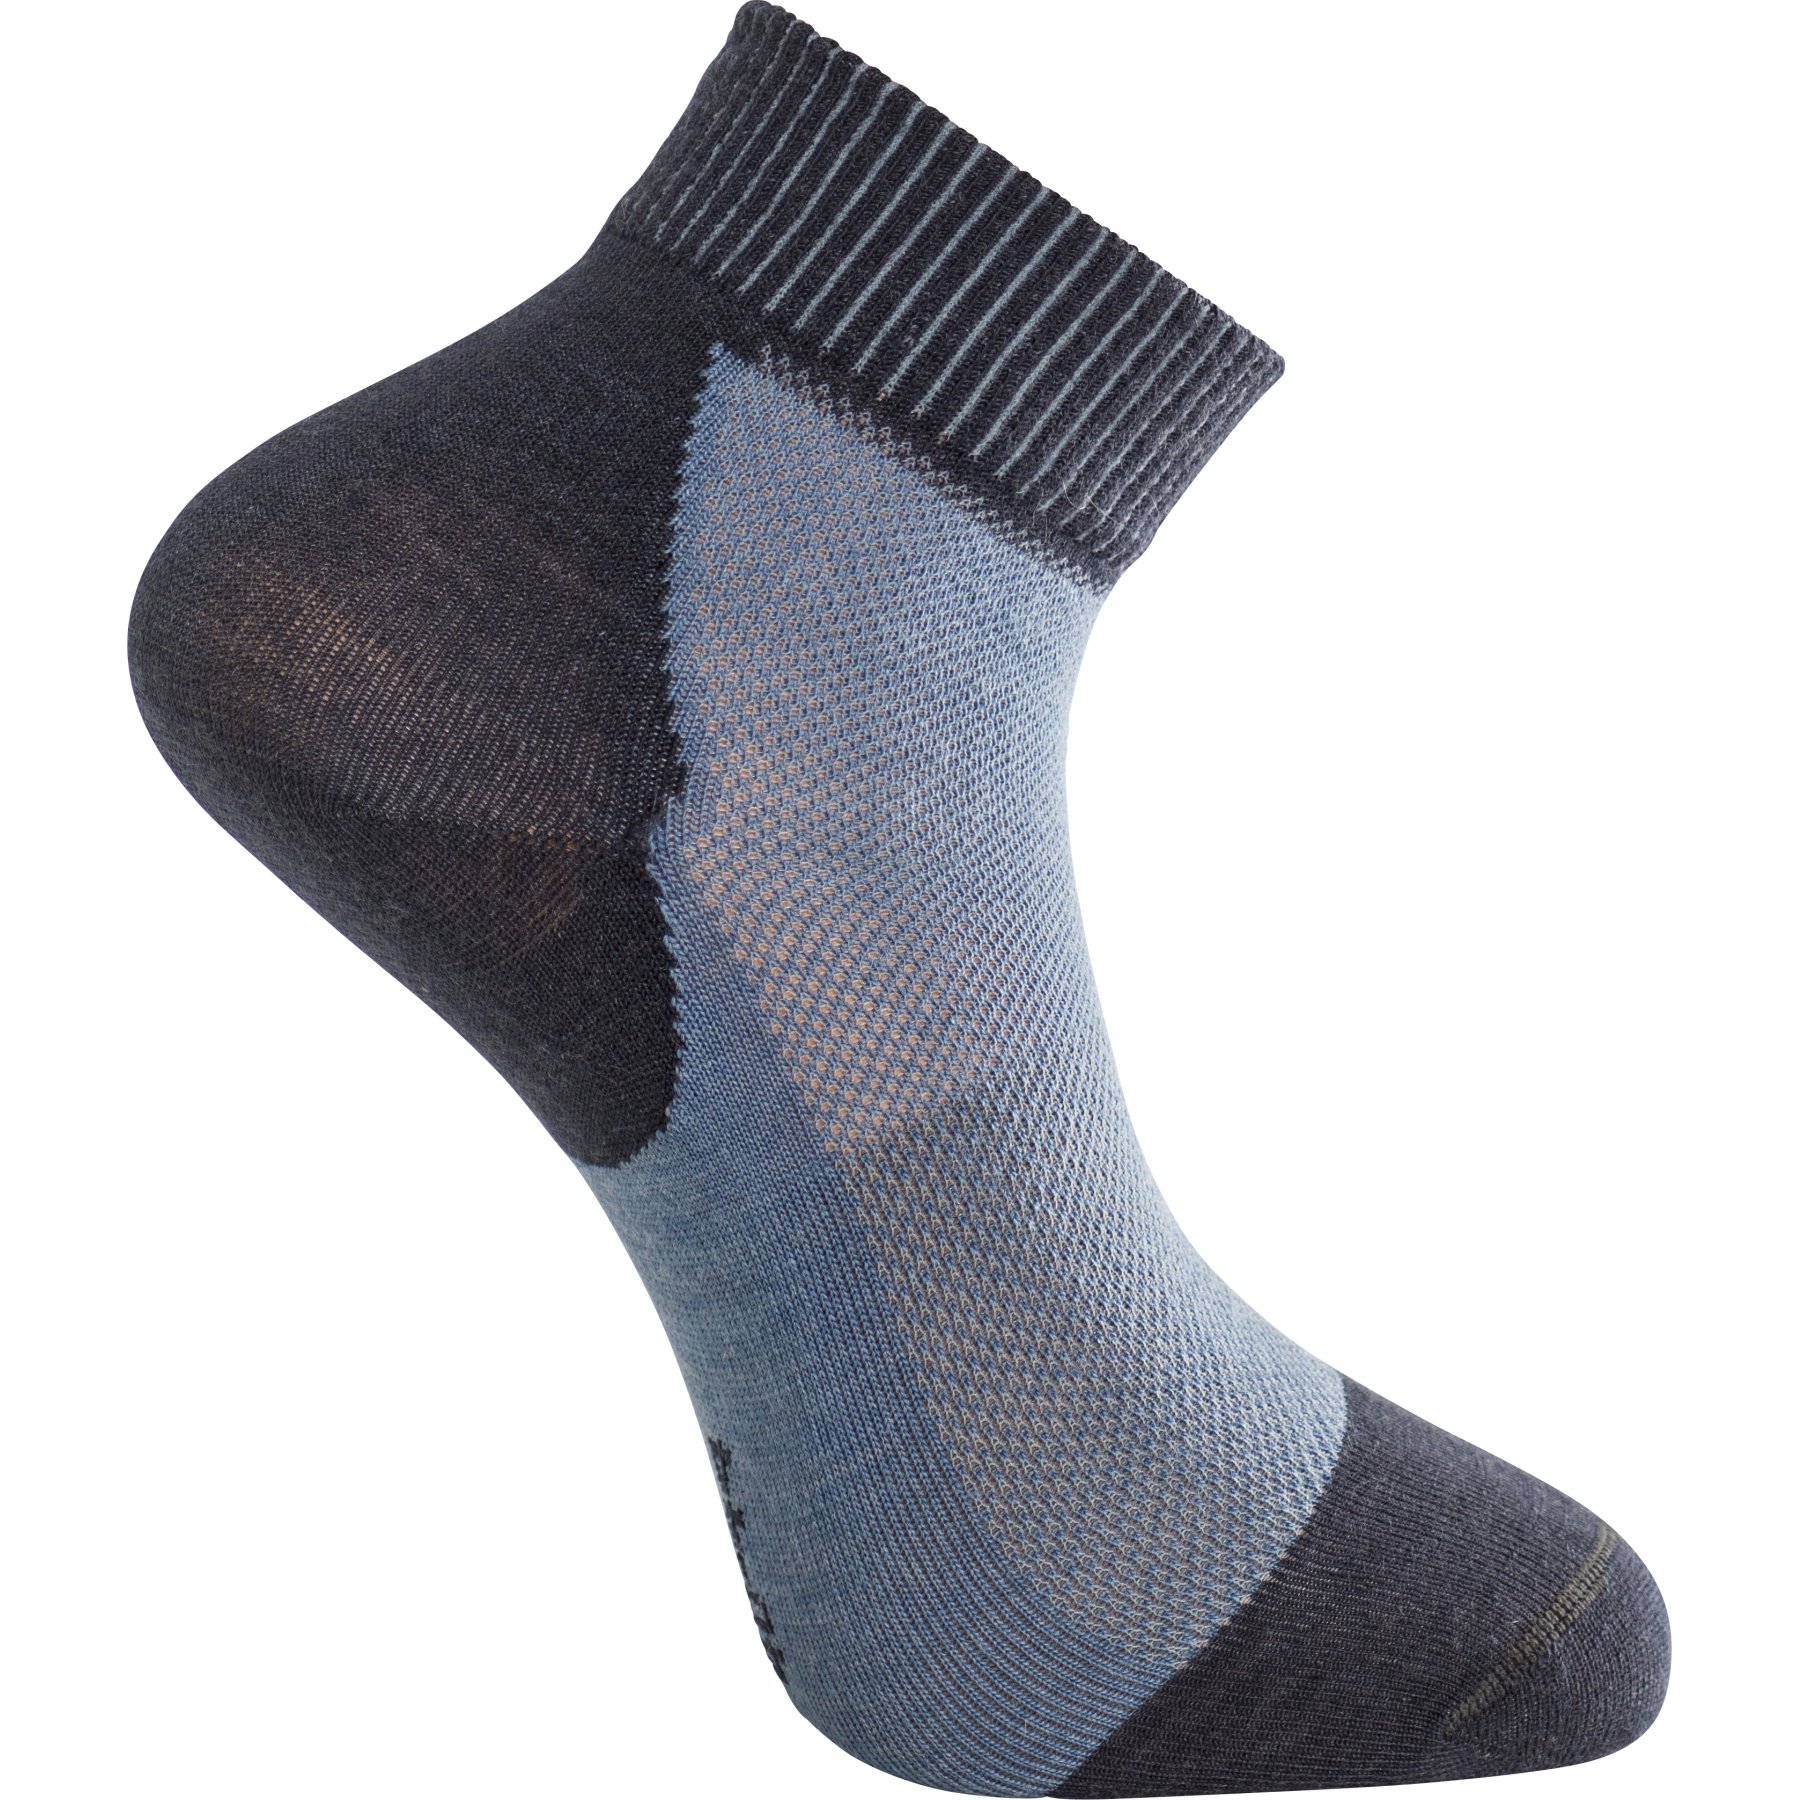 Produktbild von Woolpower Skilled Liner Short Socken - dark navy-nordic blue